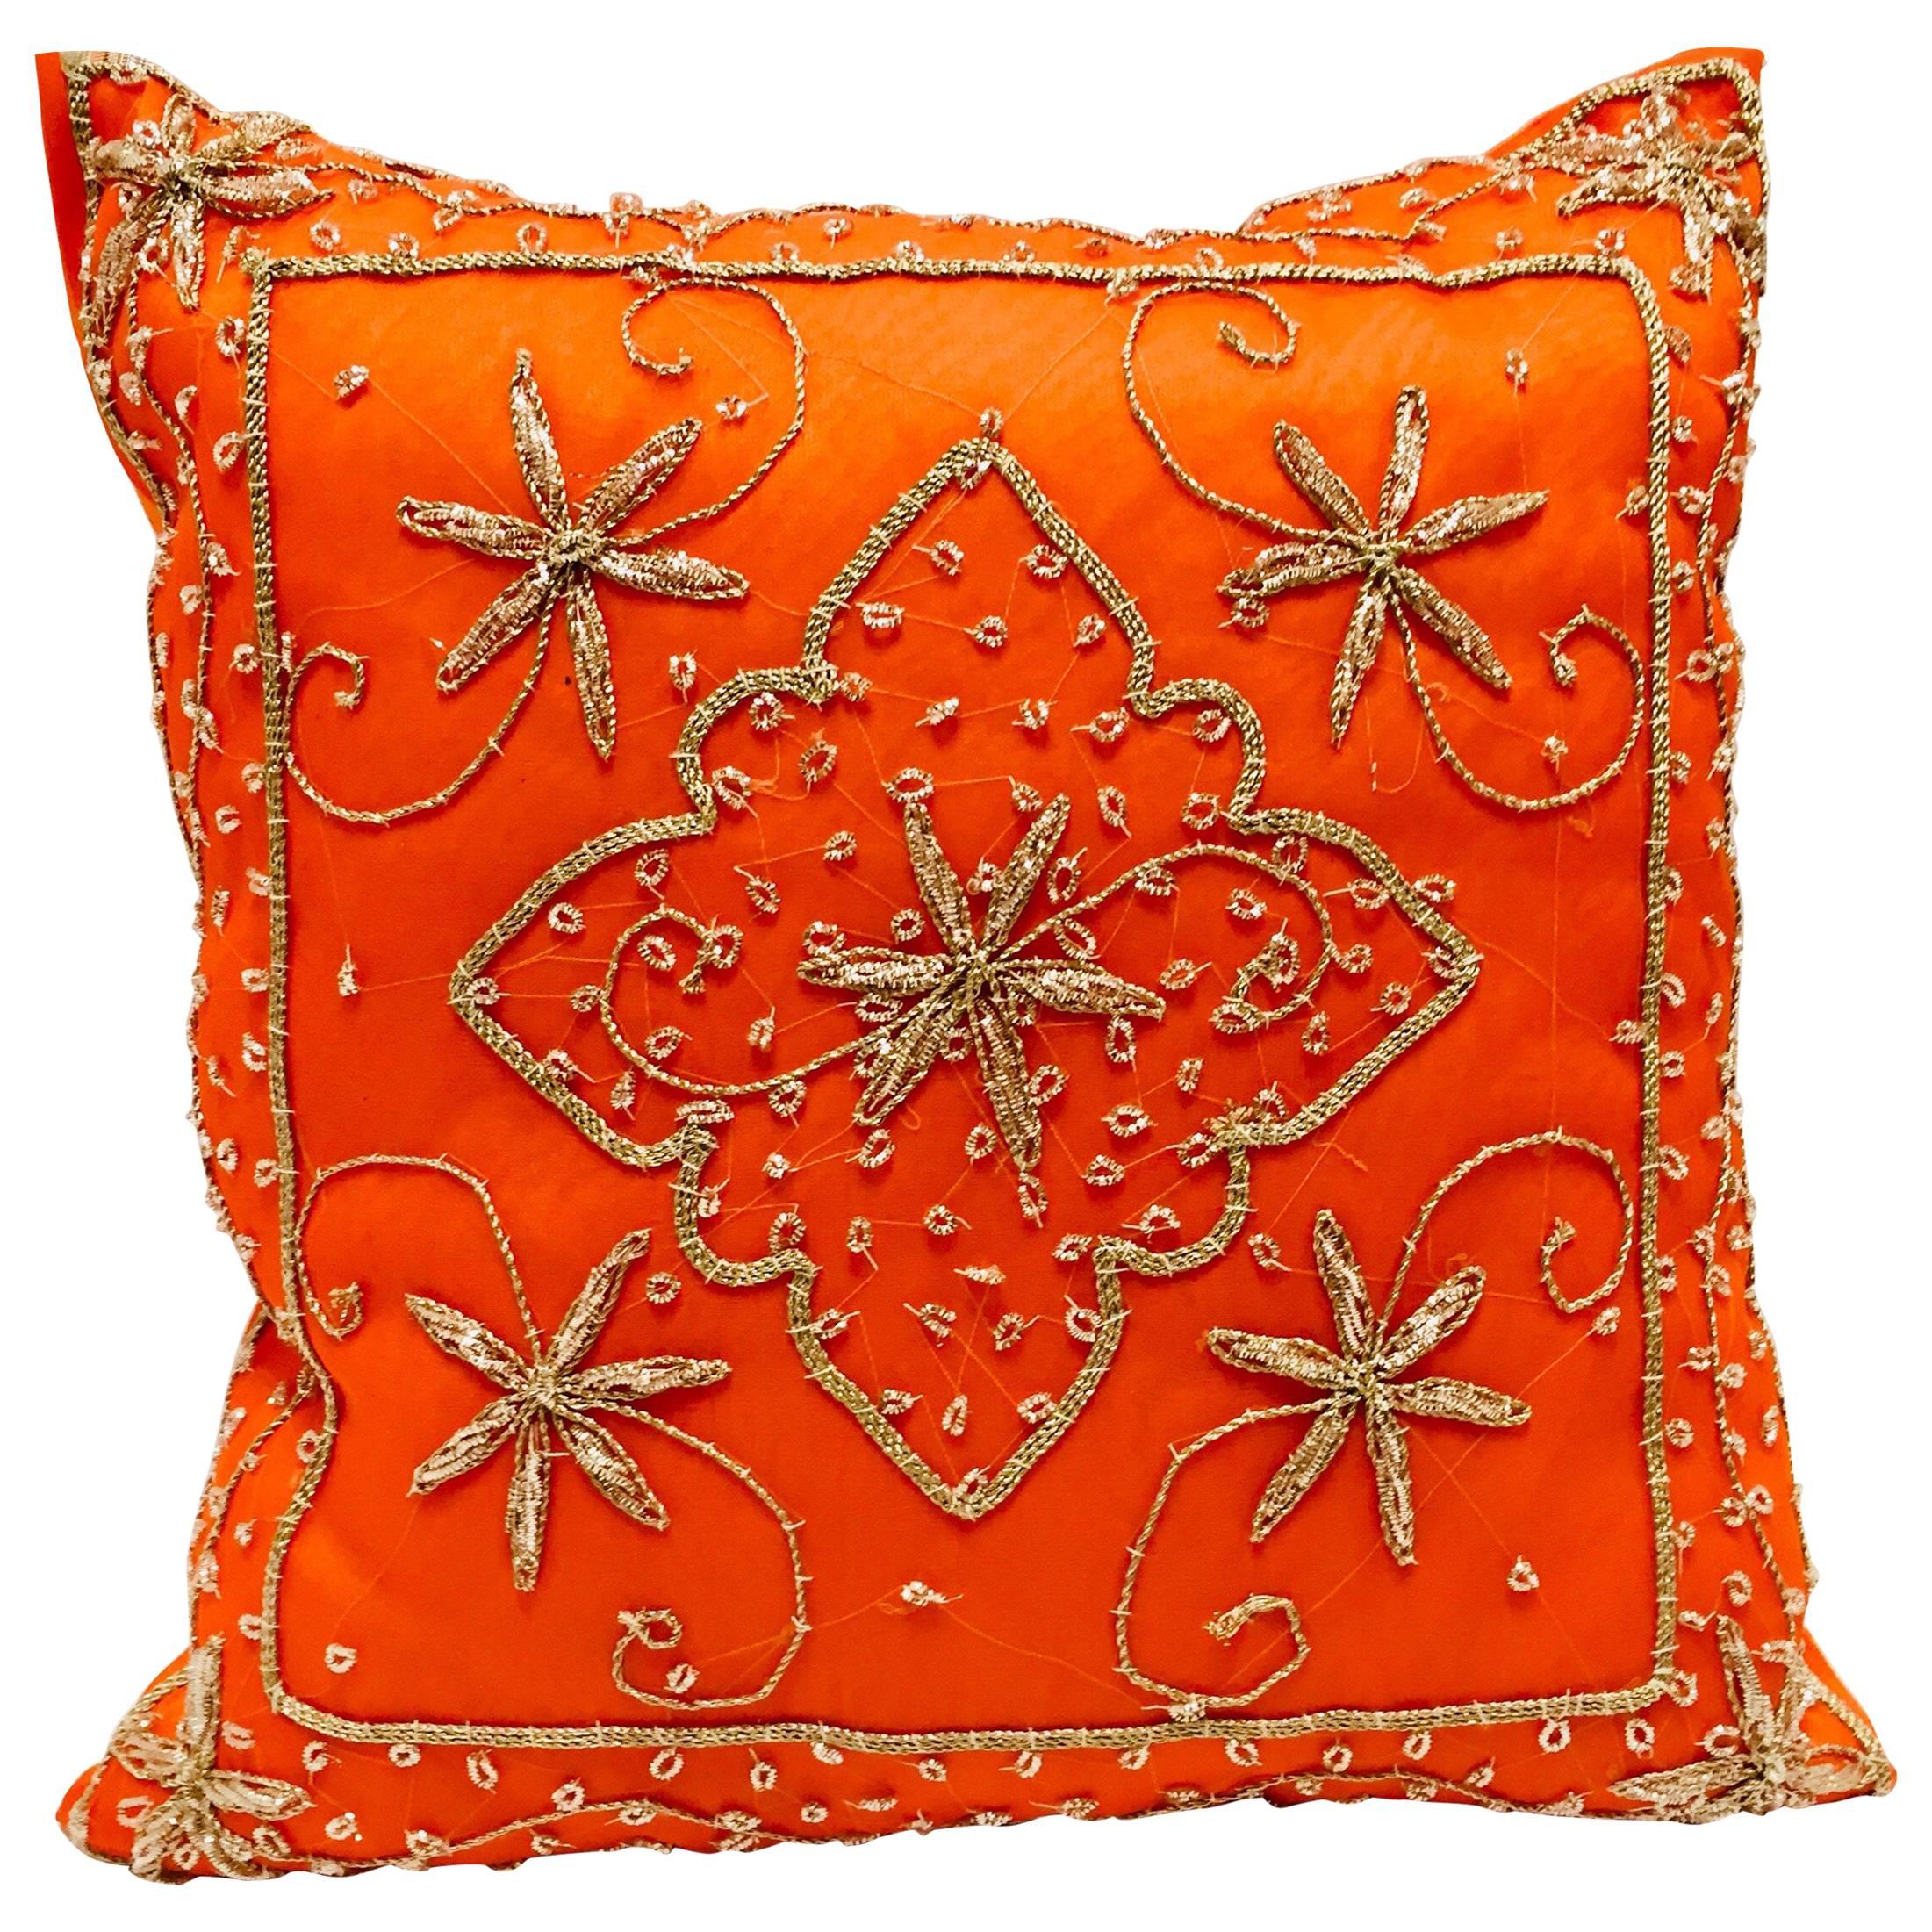 Dekoratives Orangefarbenes Kissen mit Pailletten und Perlen verziert